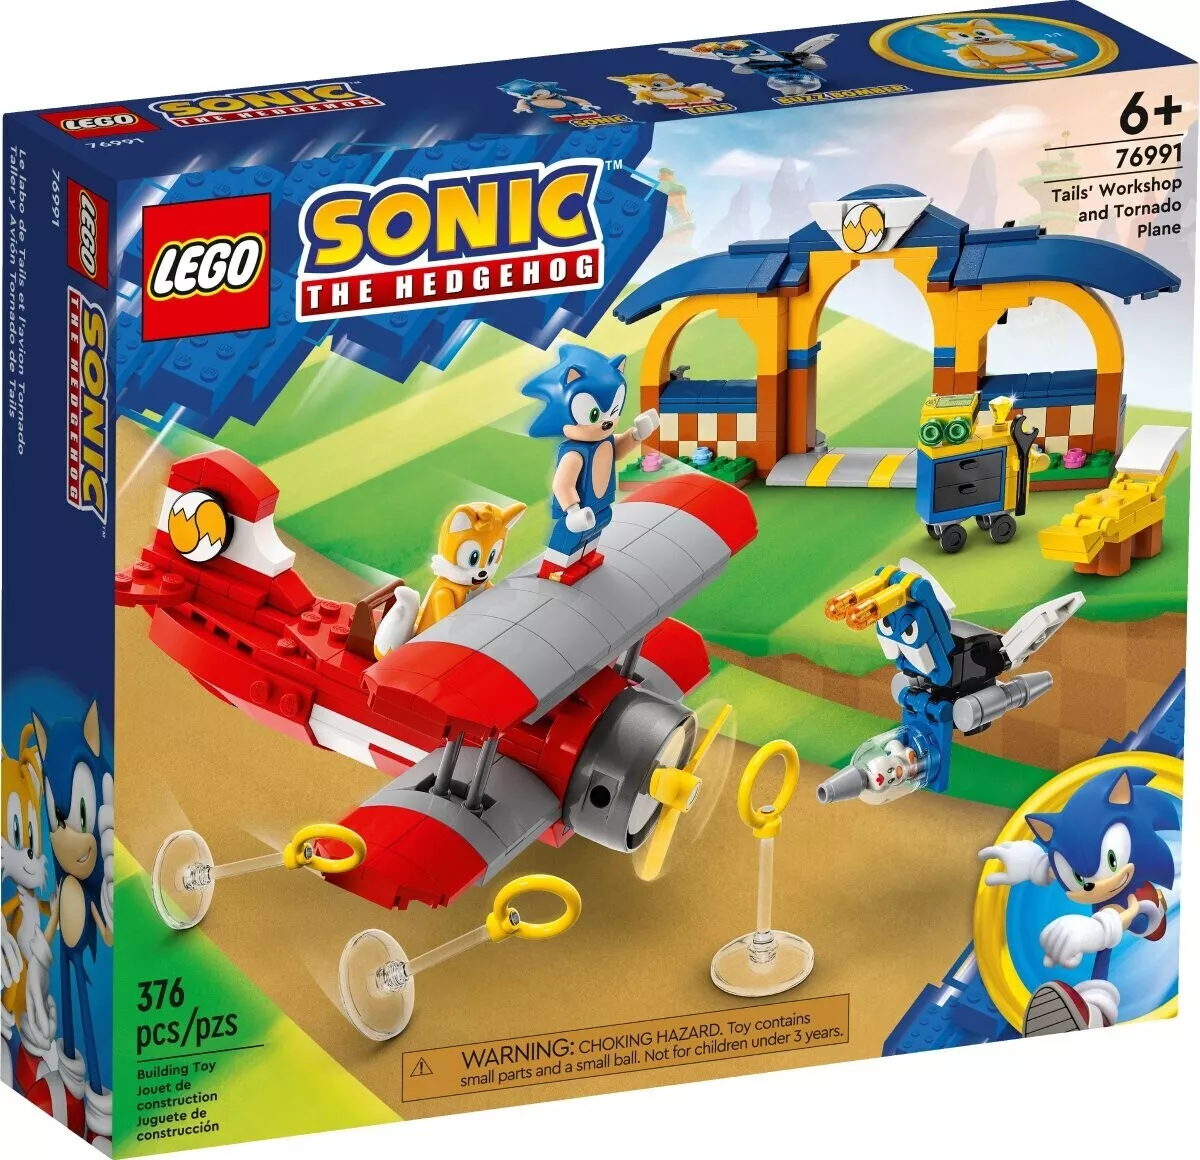 LEGO 76991 Sonic Tails‘ tornadoflieger mit werkstatt